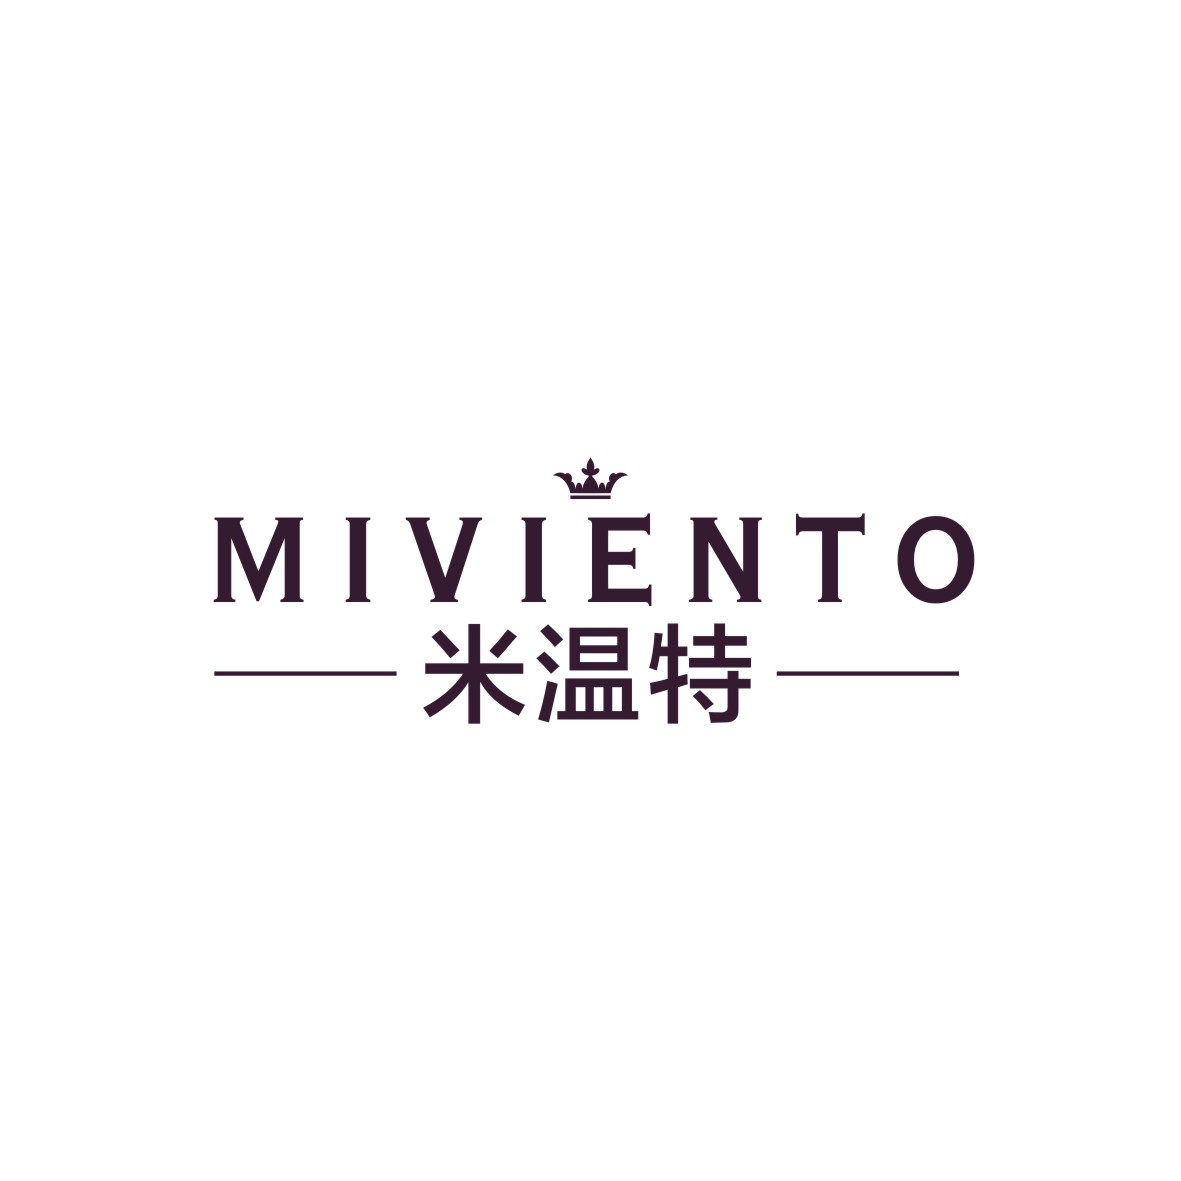 广州知麦网络科技有限公司商标米温特 MIVIENTO（25类）商标买卖平台报价，上哪个平台最省钱？